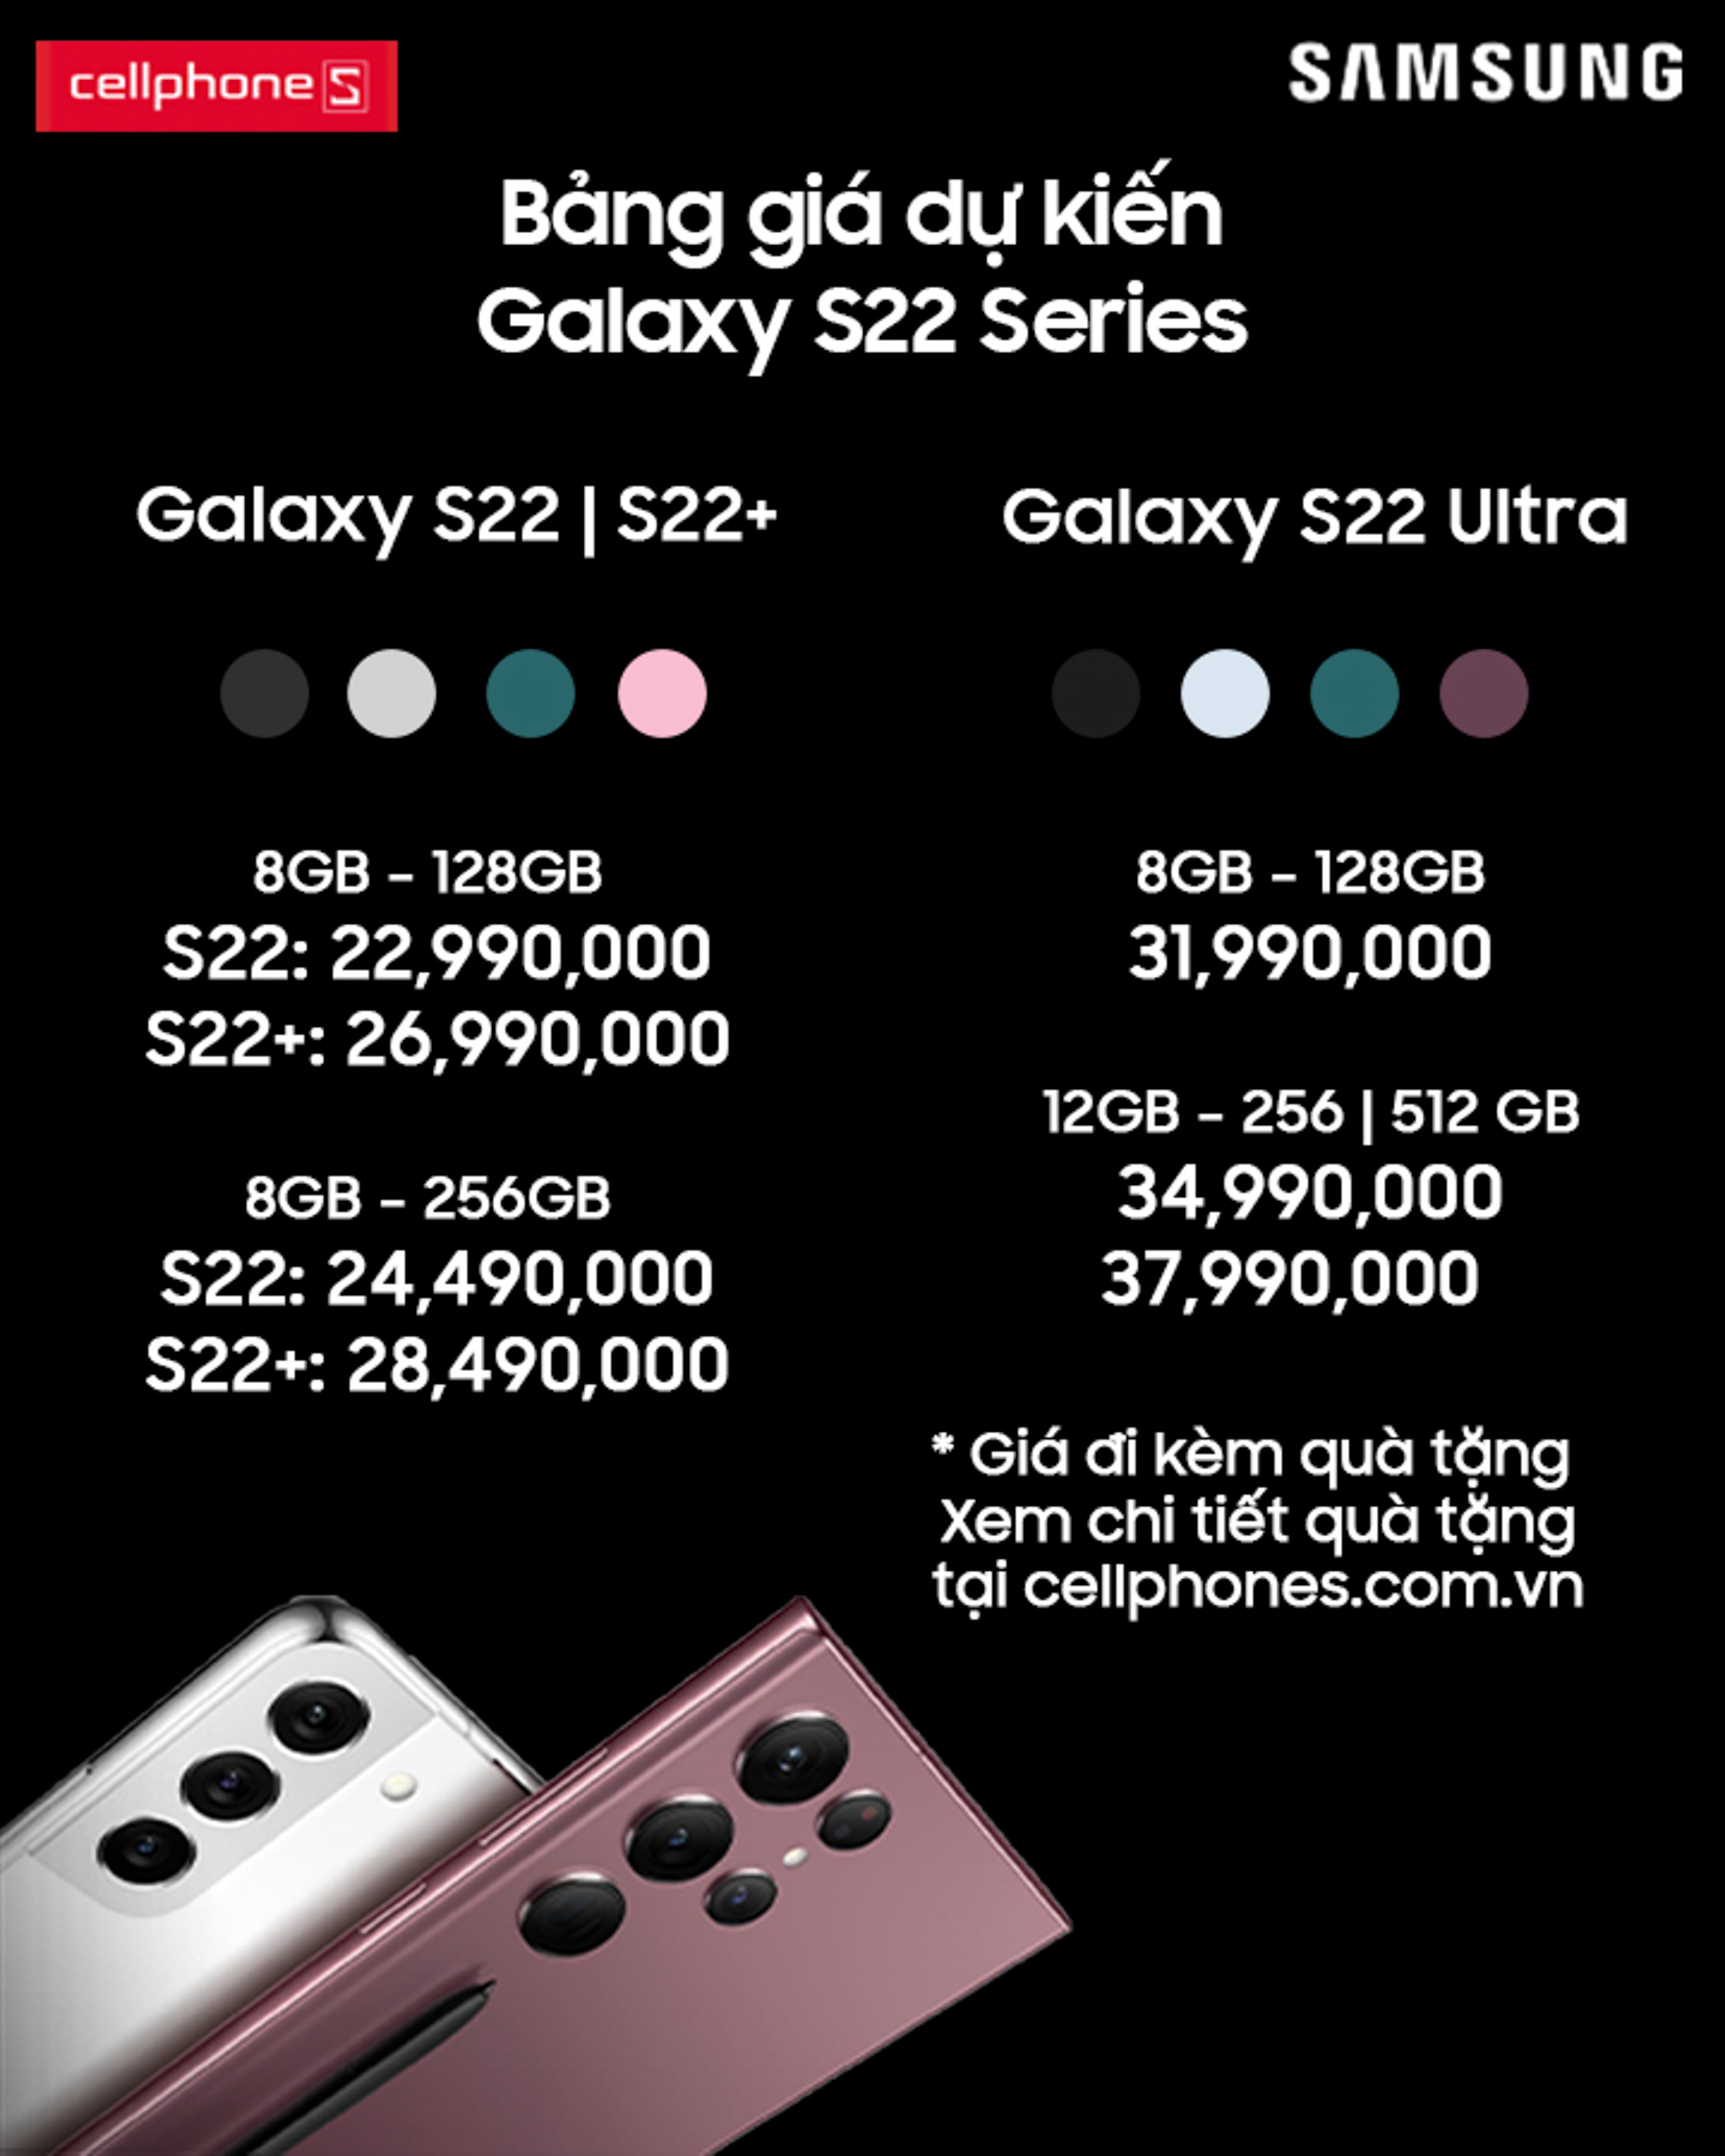 Galaxy S22 series ra mắt, nhà bán lẻ kế hoạch tăng trưởng bùng nổ 300%